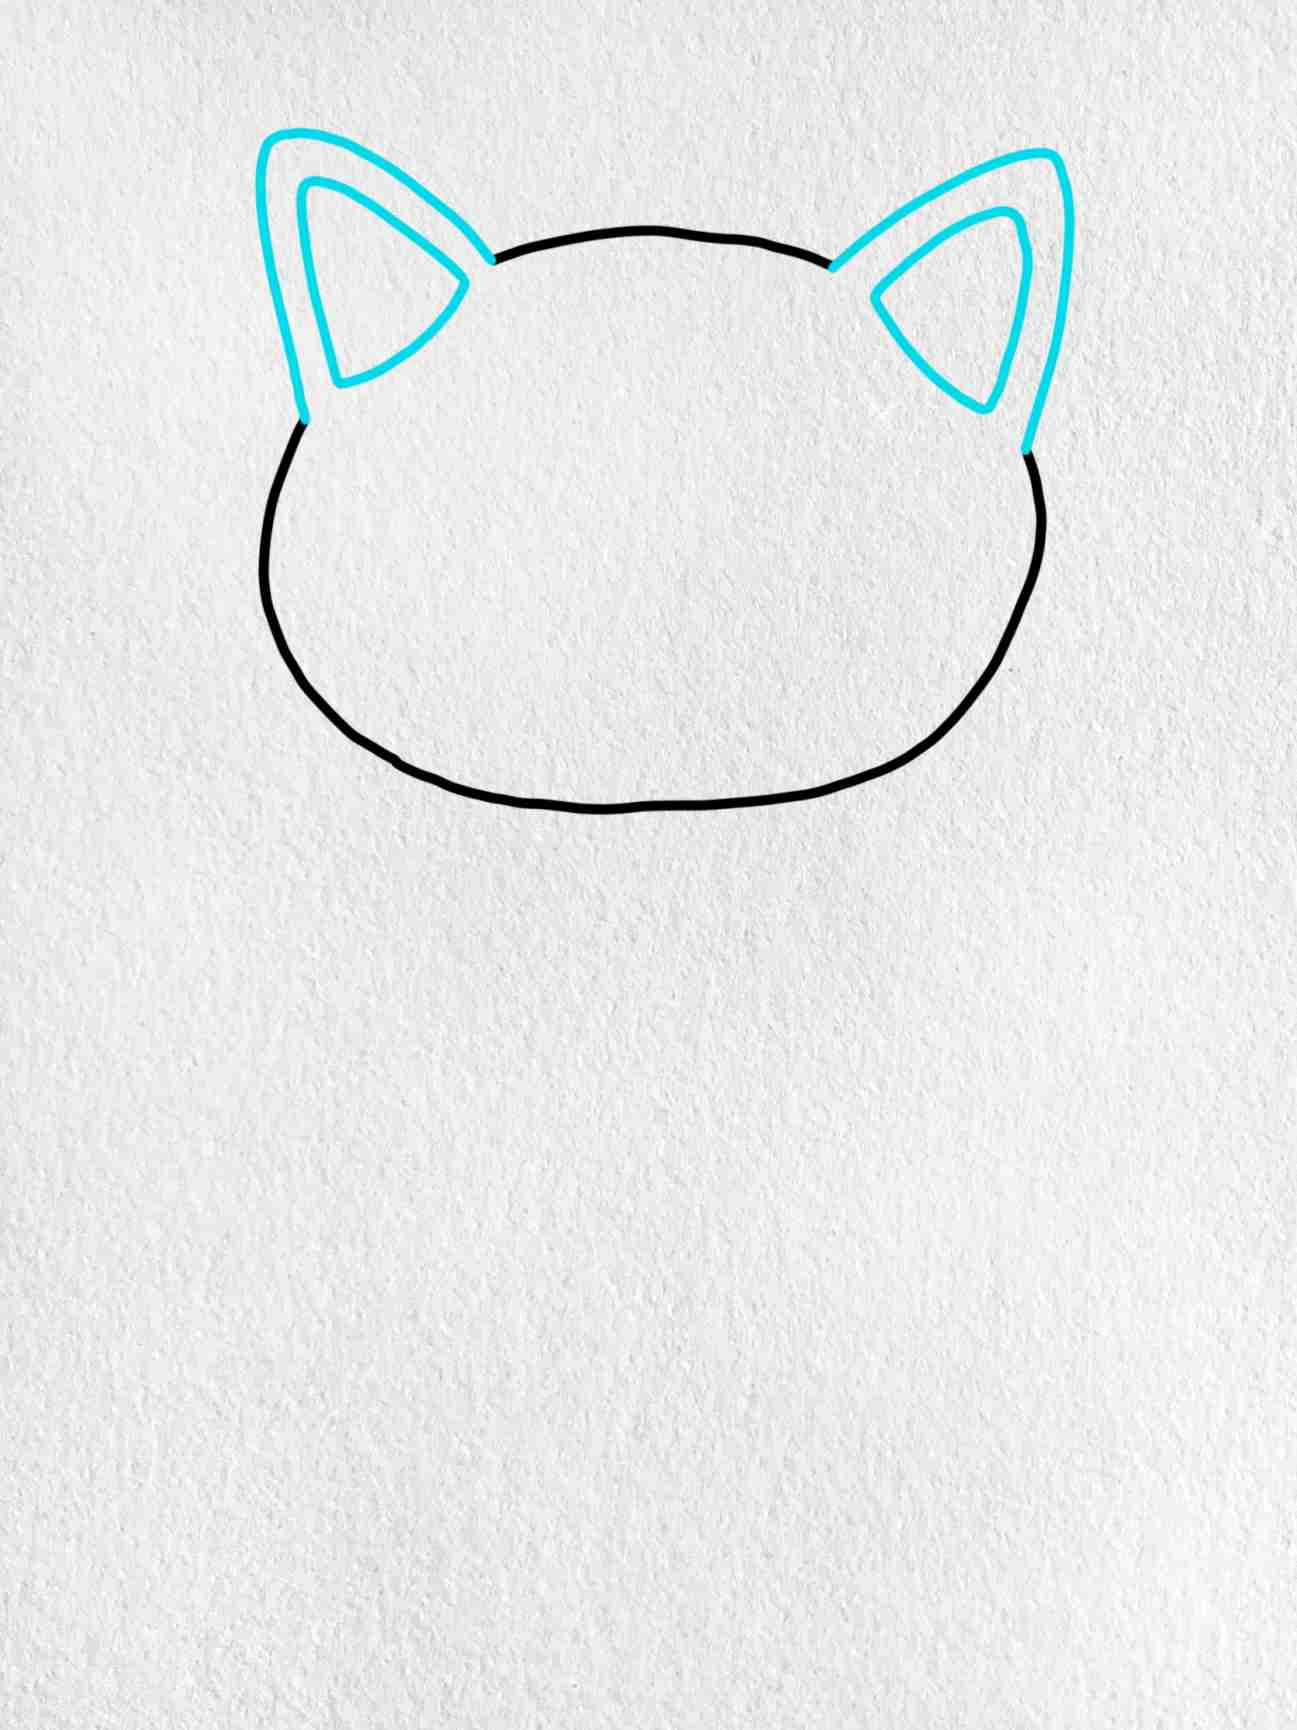 Cat Simple Art Drawing